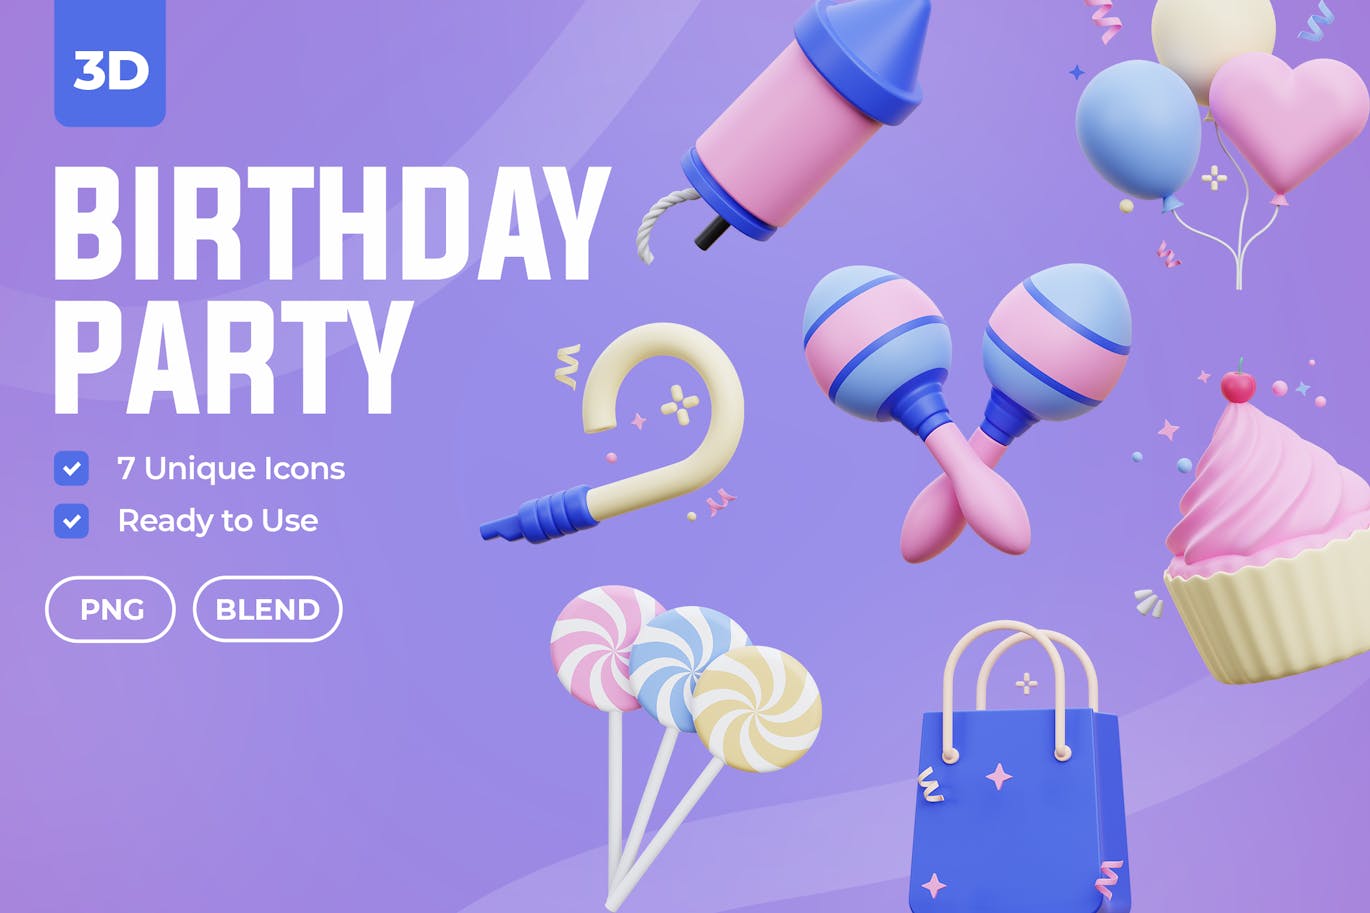 生日聚会 3D 图标 (PNG,Blend)